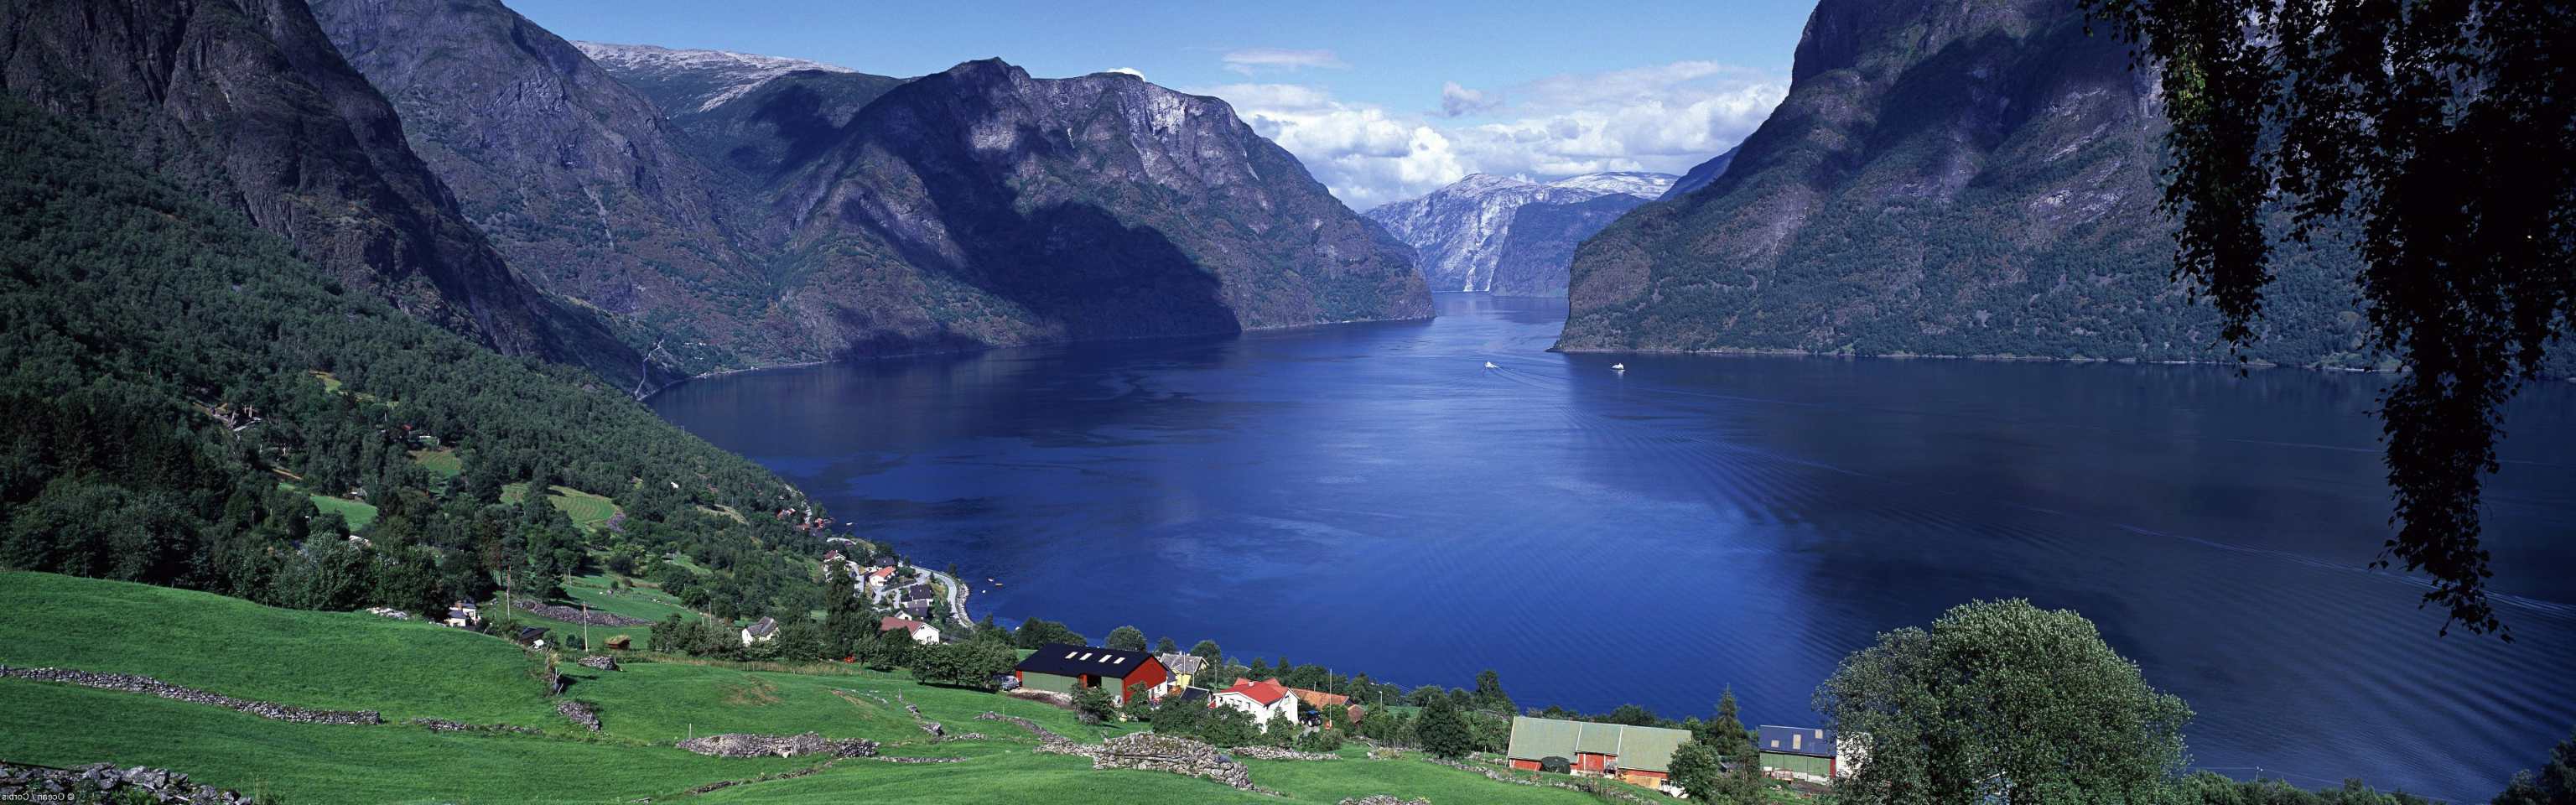 挪威高山峡湾横屏长图壁纸 清新 湖水 森林